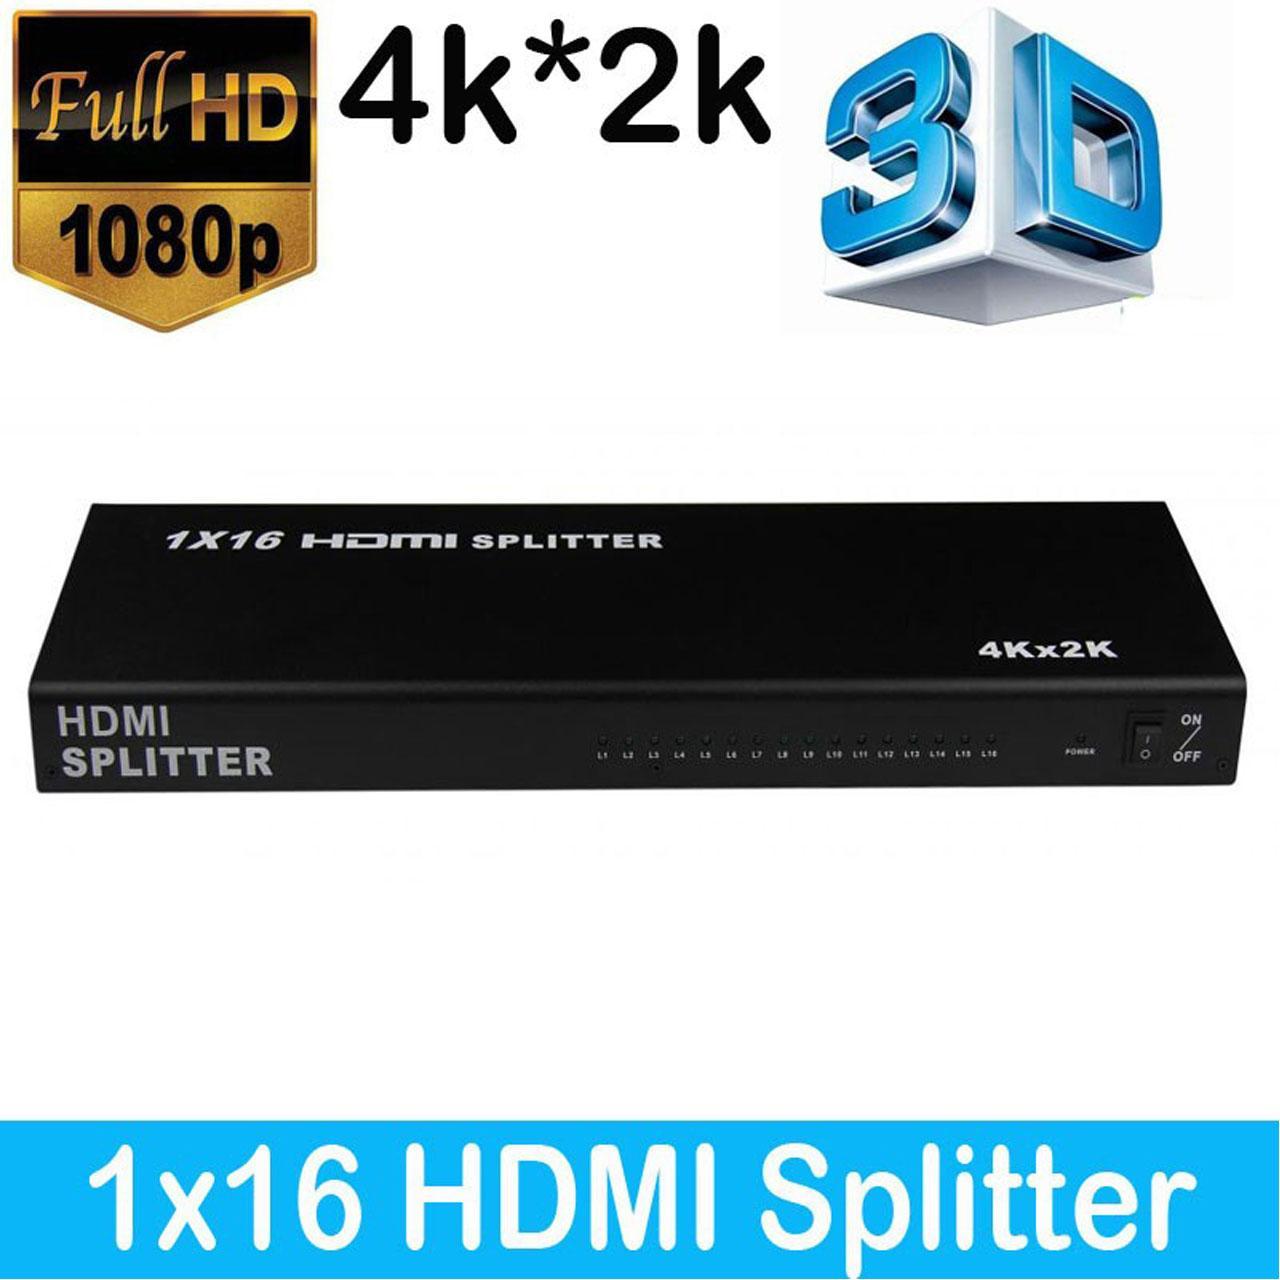 اسپلیتر 1 به 16 پورت HDMI